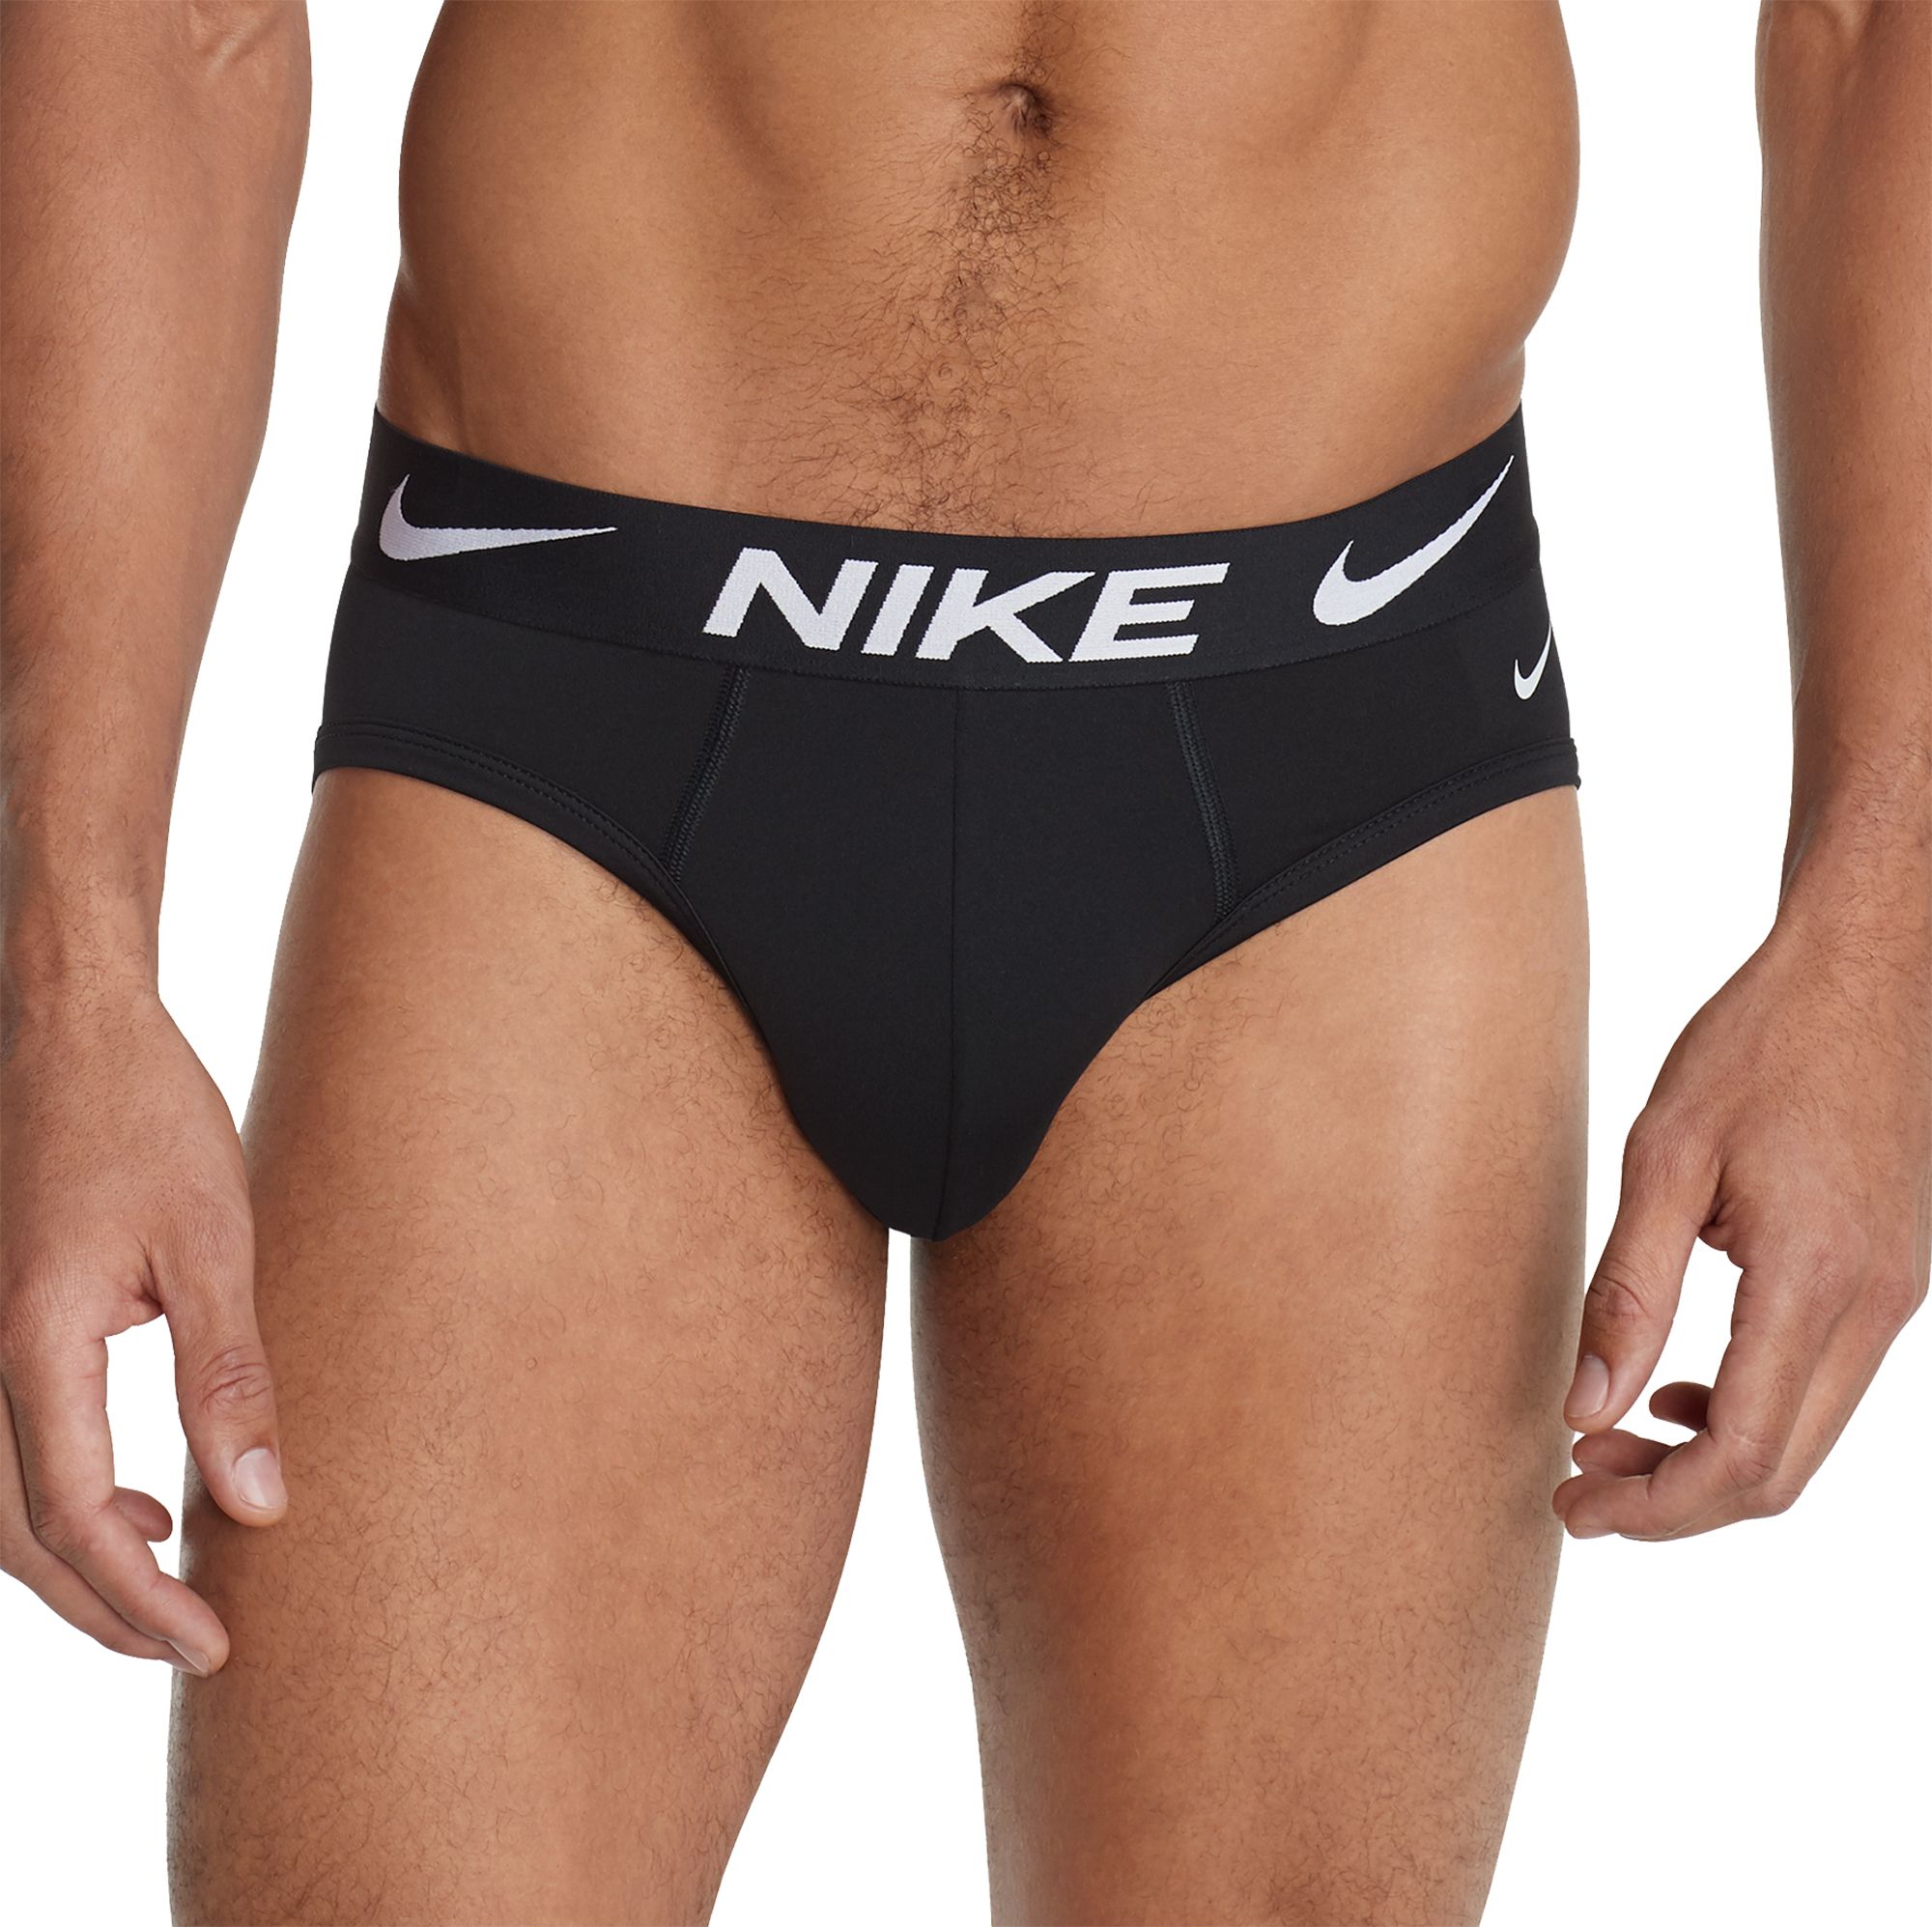 nike men's underwear briefs